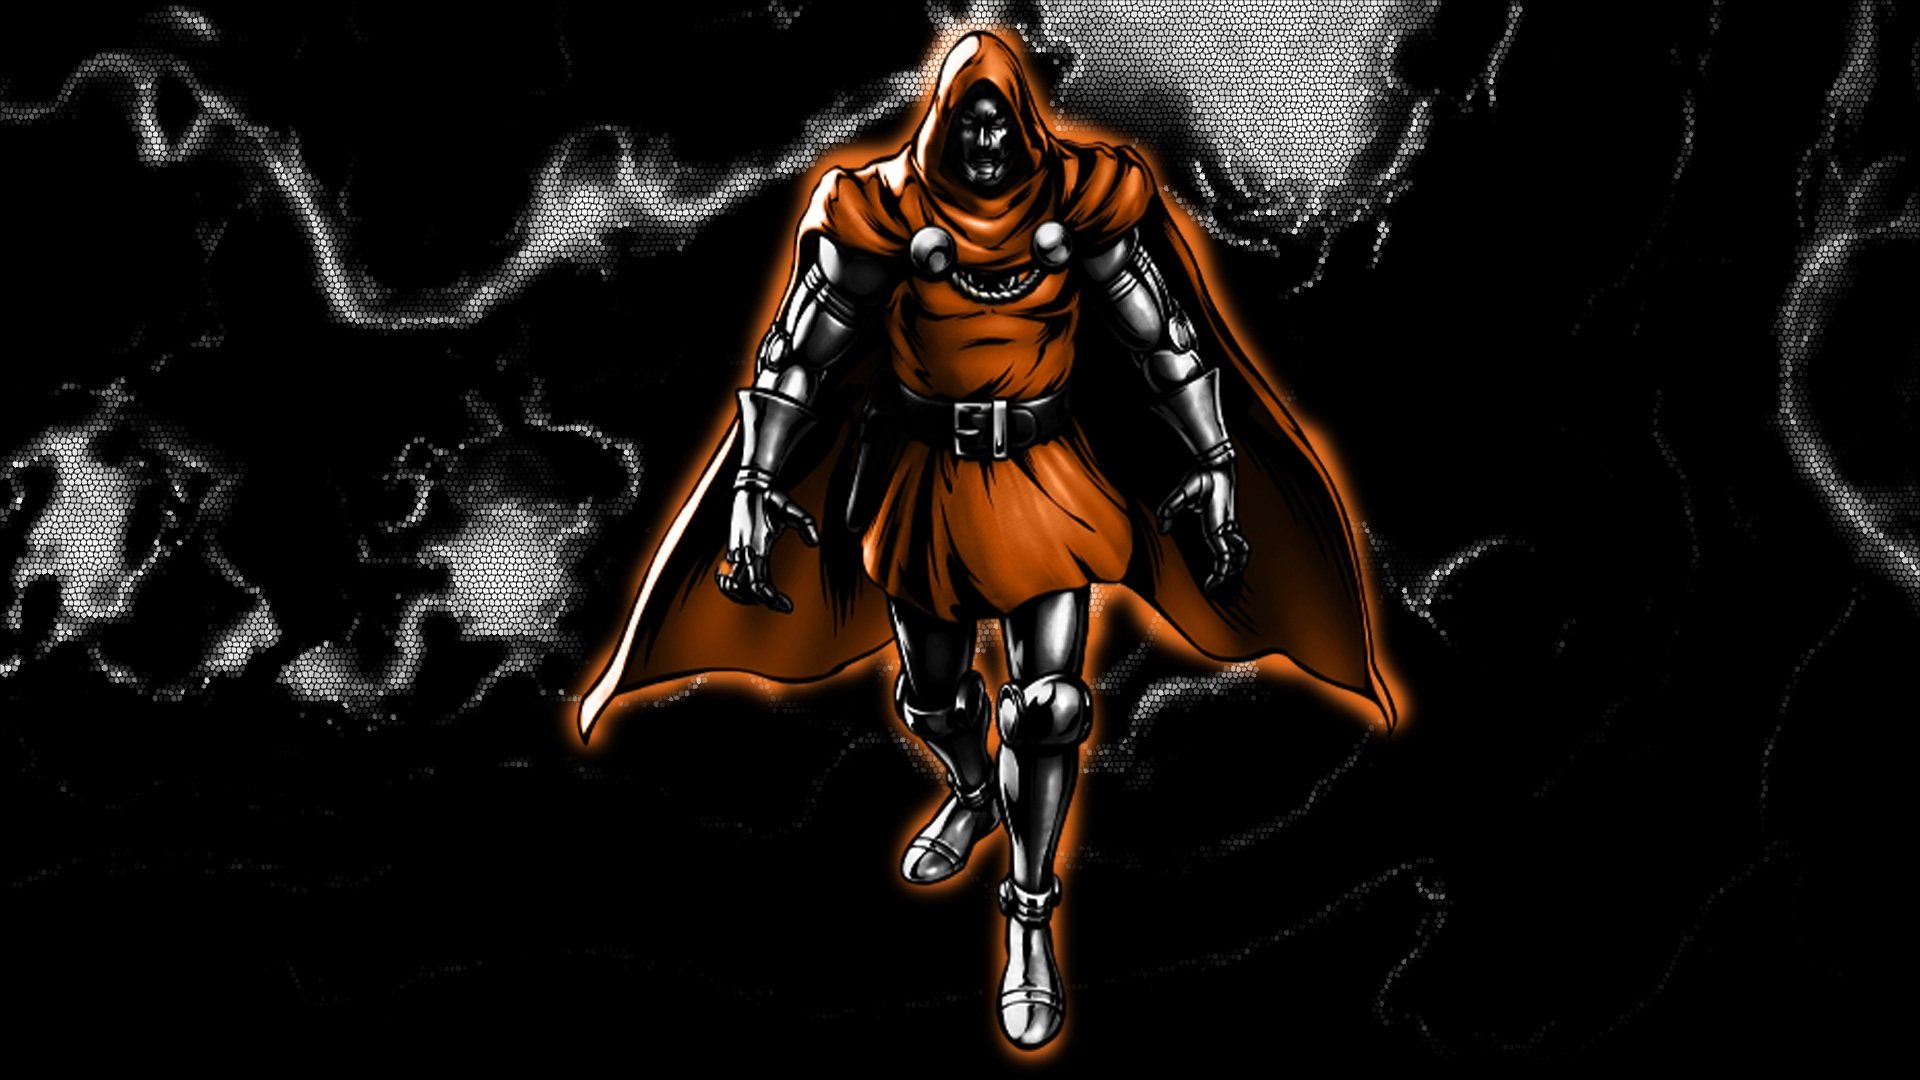 Dr Doom Agent Orange by 666Darks on